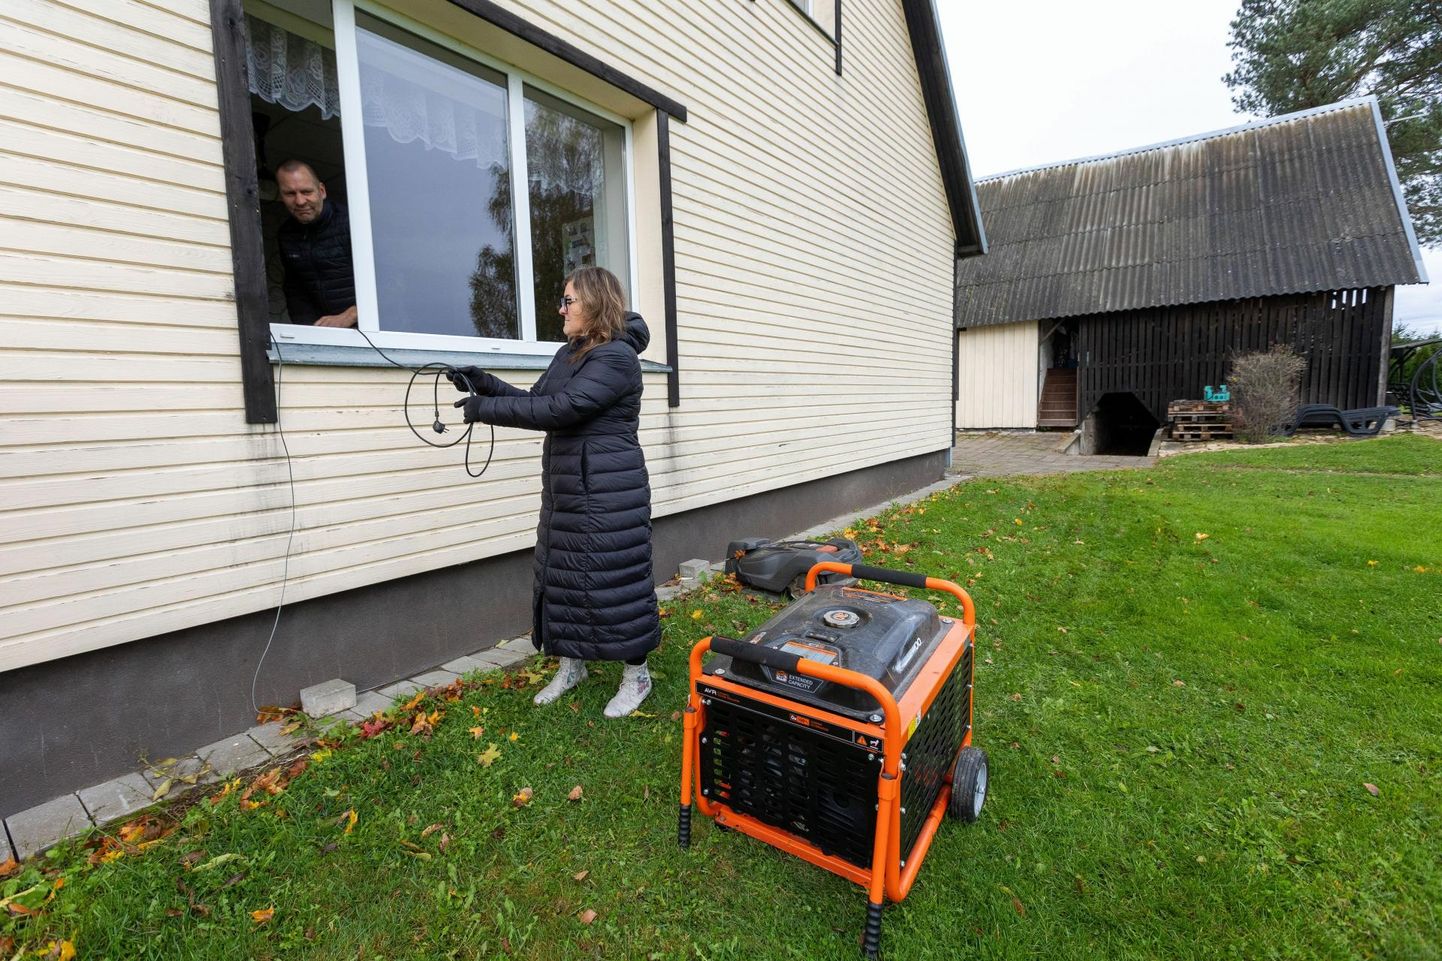 Aile ja Kaido Kalvik hoidsid kodu valge ja soojana tuttavalt laenatud generaatori abil 66 tundi.